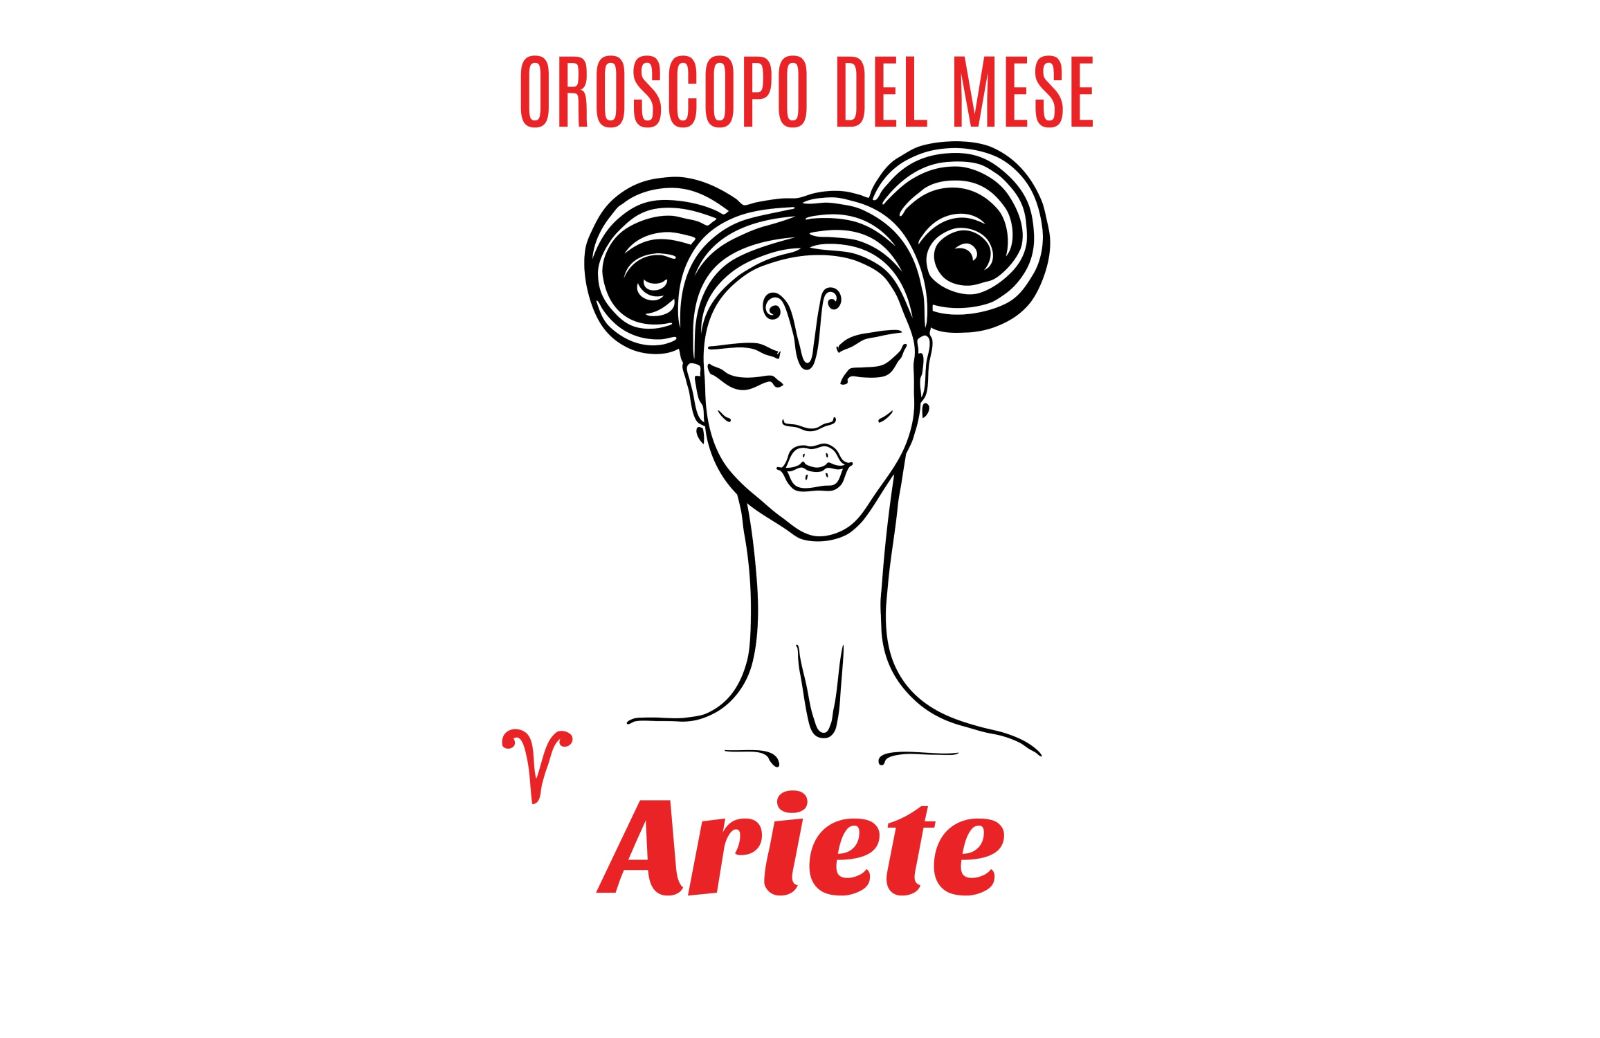 Oroscopo del mese: Ariete - maggio 2018